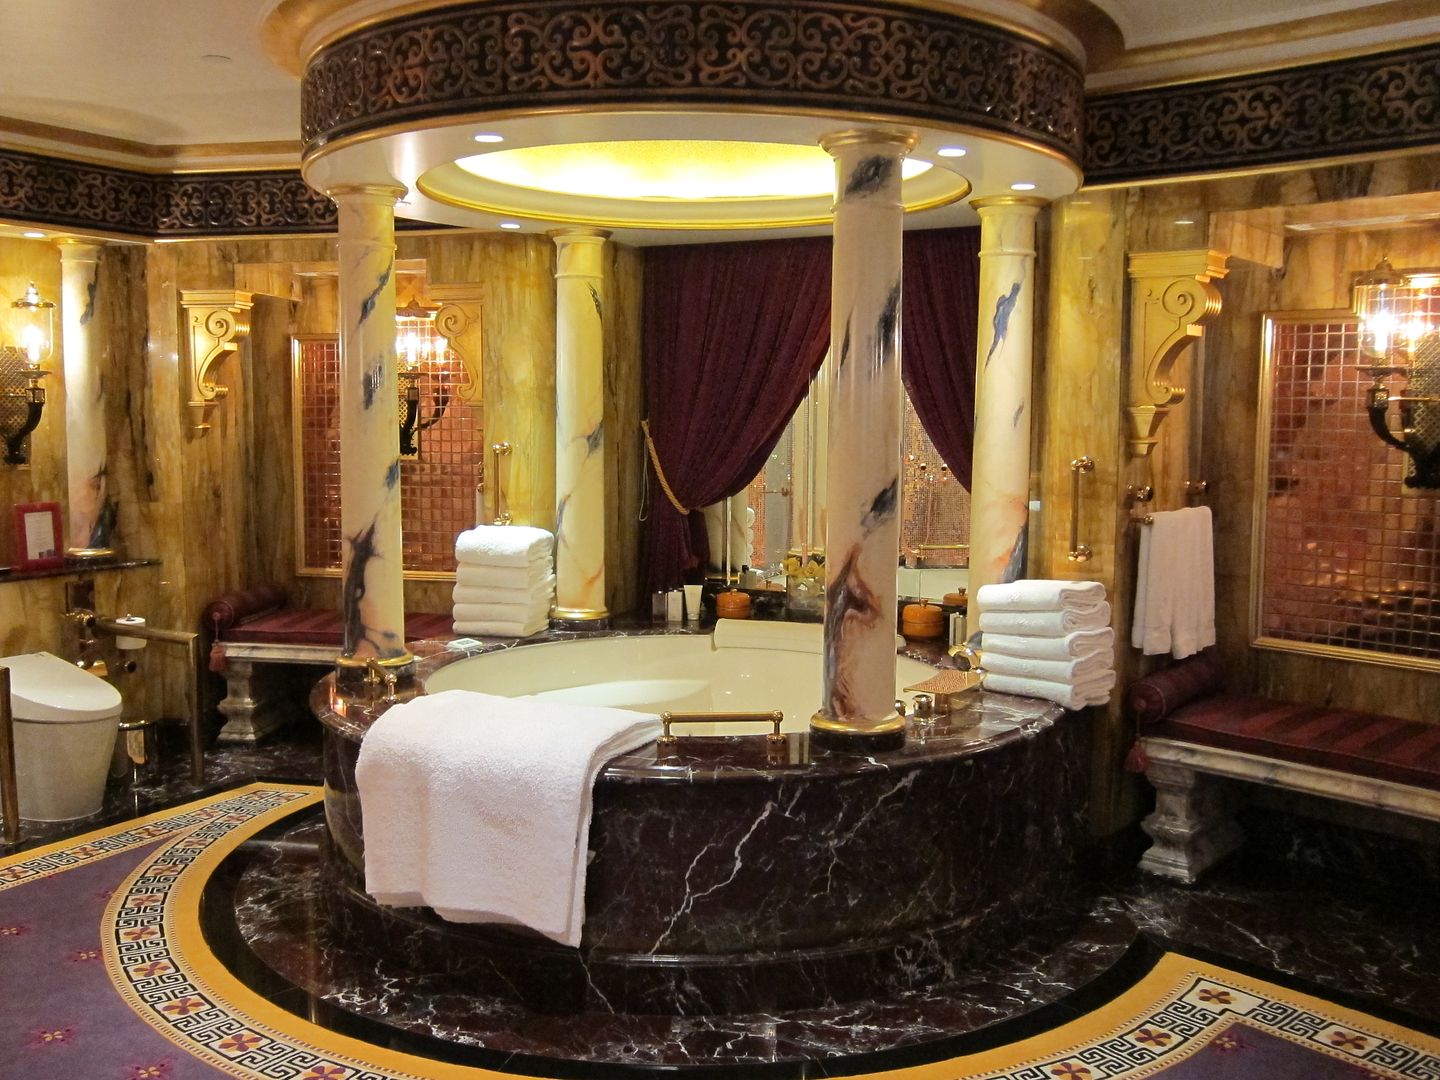 Burj Al Arab Tour Inside The World S Only 7 Star Hotel